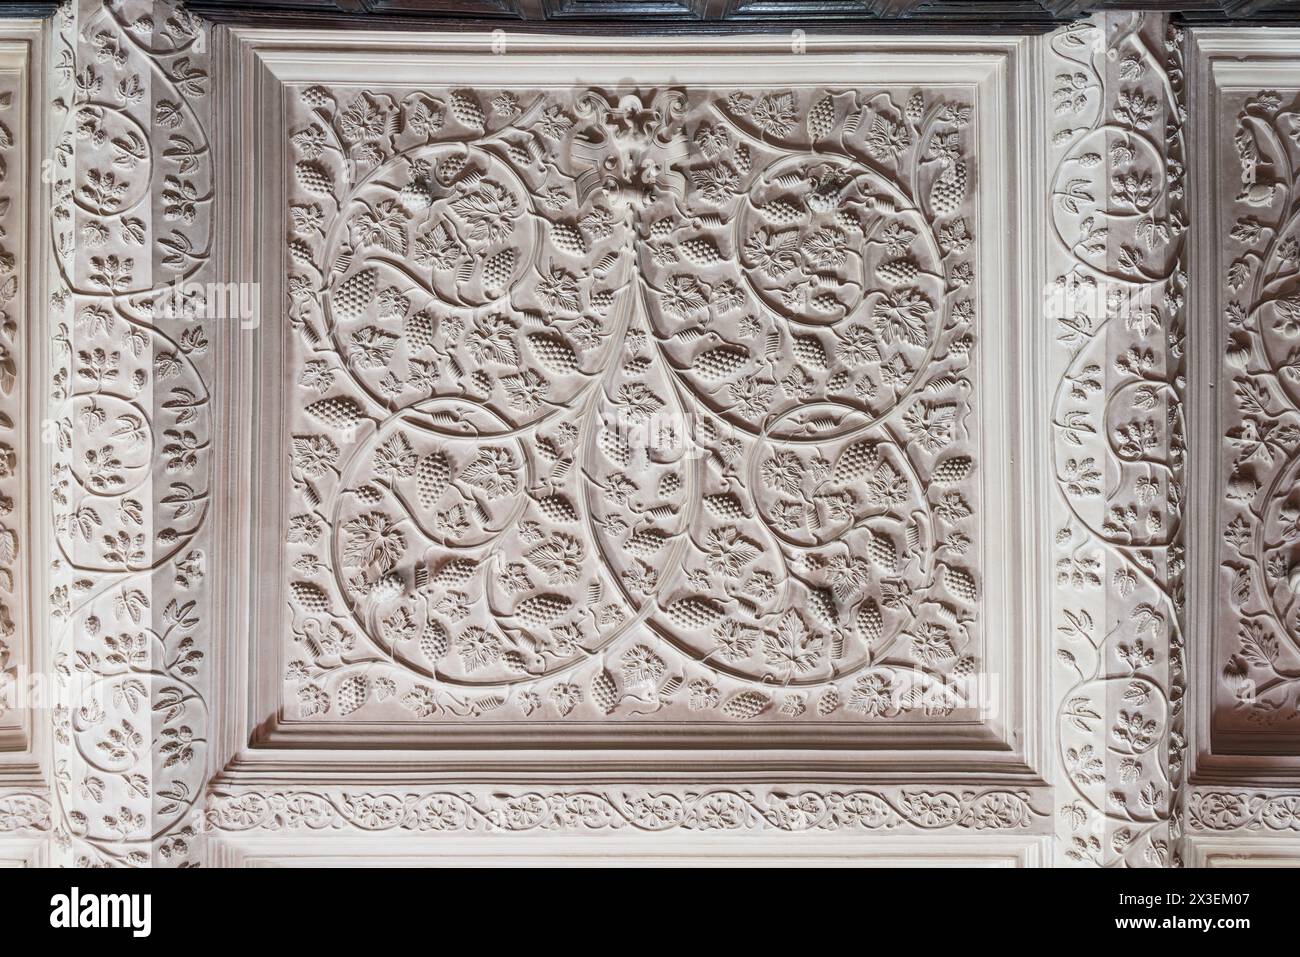 Arti decorative presso la Speke Hall, residenza Tudor del National Trust di grado i, Liverpool, Inghilterra, Regno Unito. Foto Stock